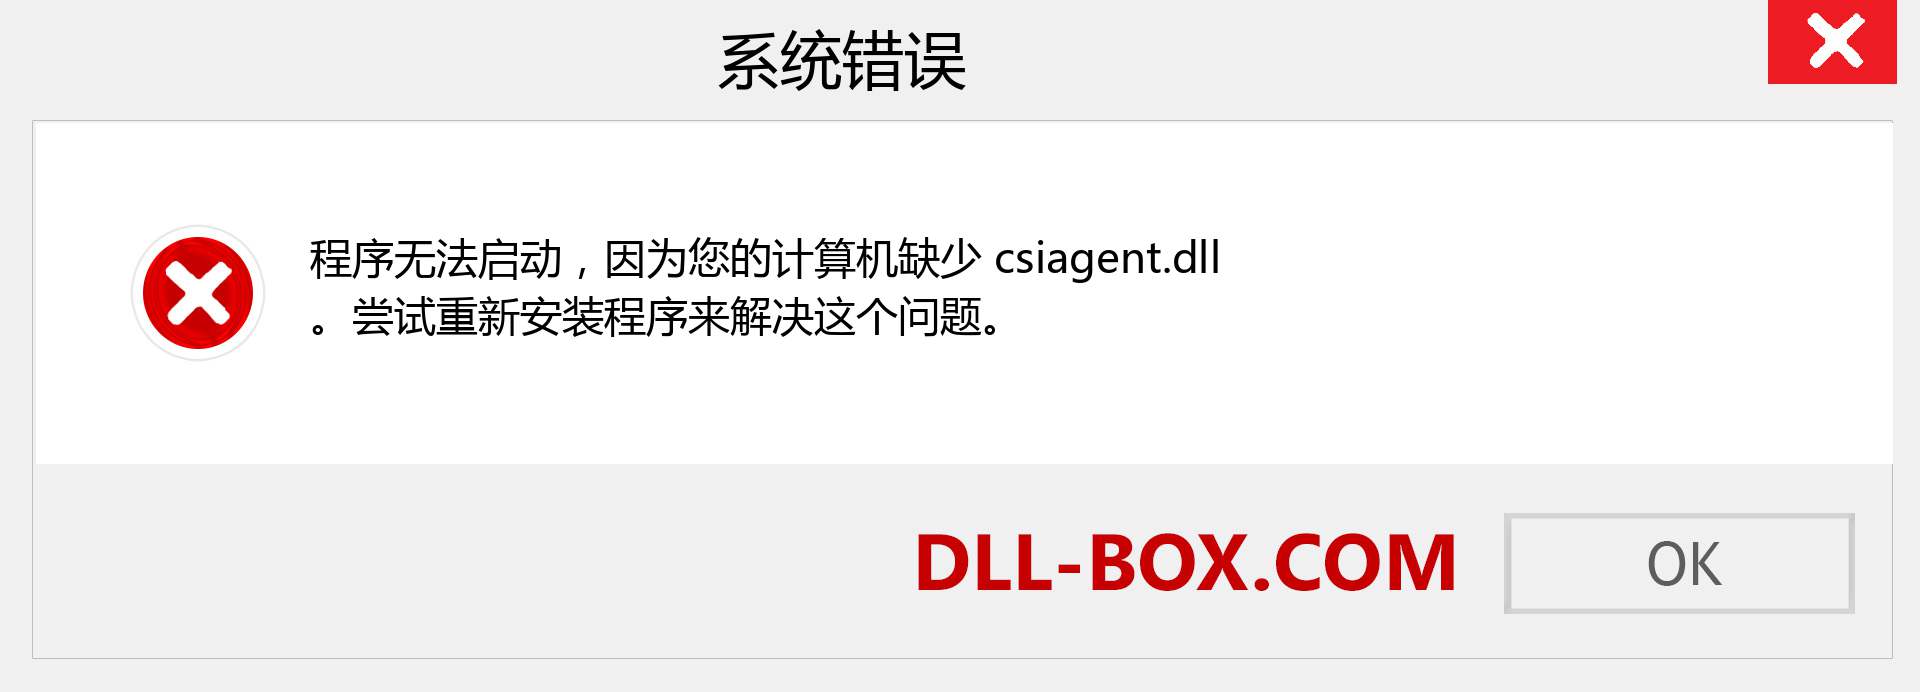 csiagent.dll 文件丢失？。 适用于 Windows 7、8、10 的下载 - 修复 Windows、照片、图像上的 csiagent dll 丢失错误